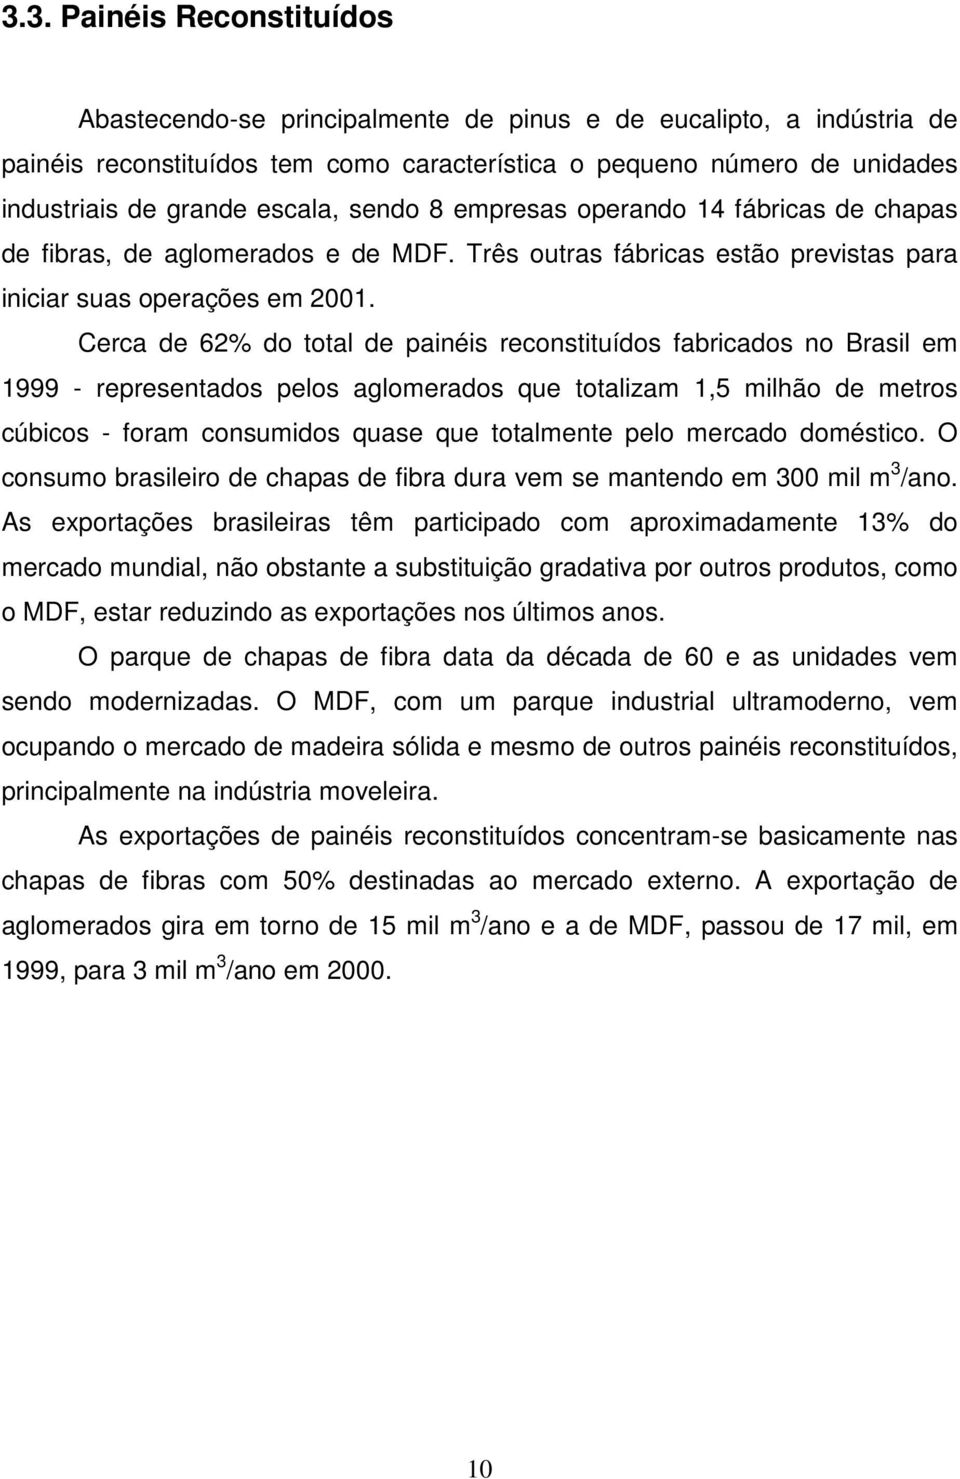 Cerca de 62% do total de painéis reconstituídos fabricados no Brasil em 1999 - representados pelos aglomerados que totalizam 1,5 milhão de metros cúbicos - foram consumidos quase que totalmente pelo